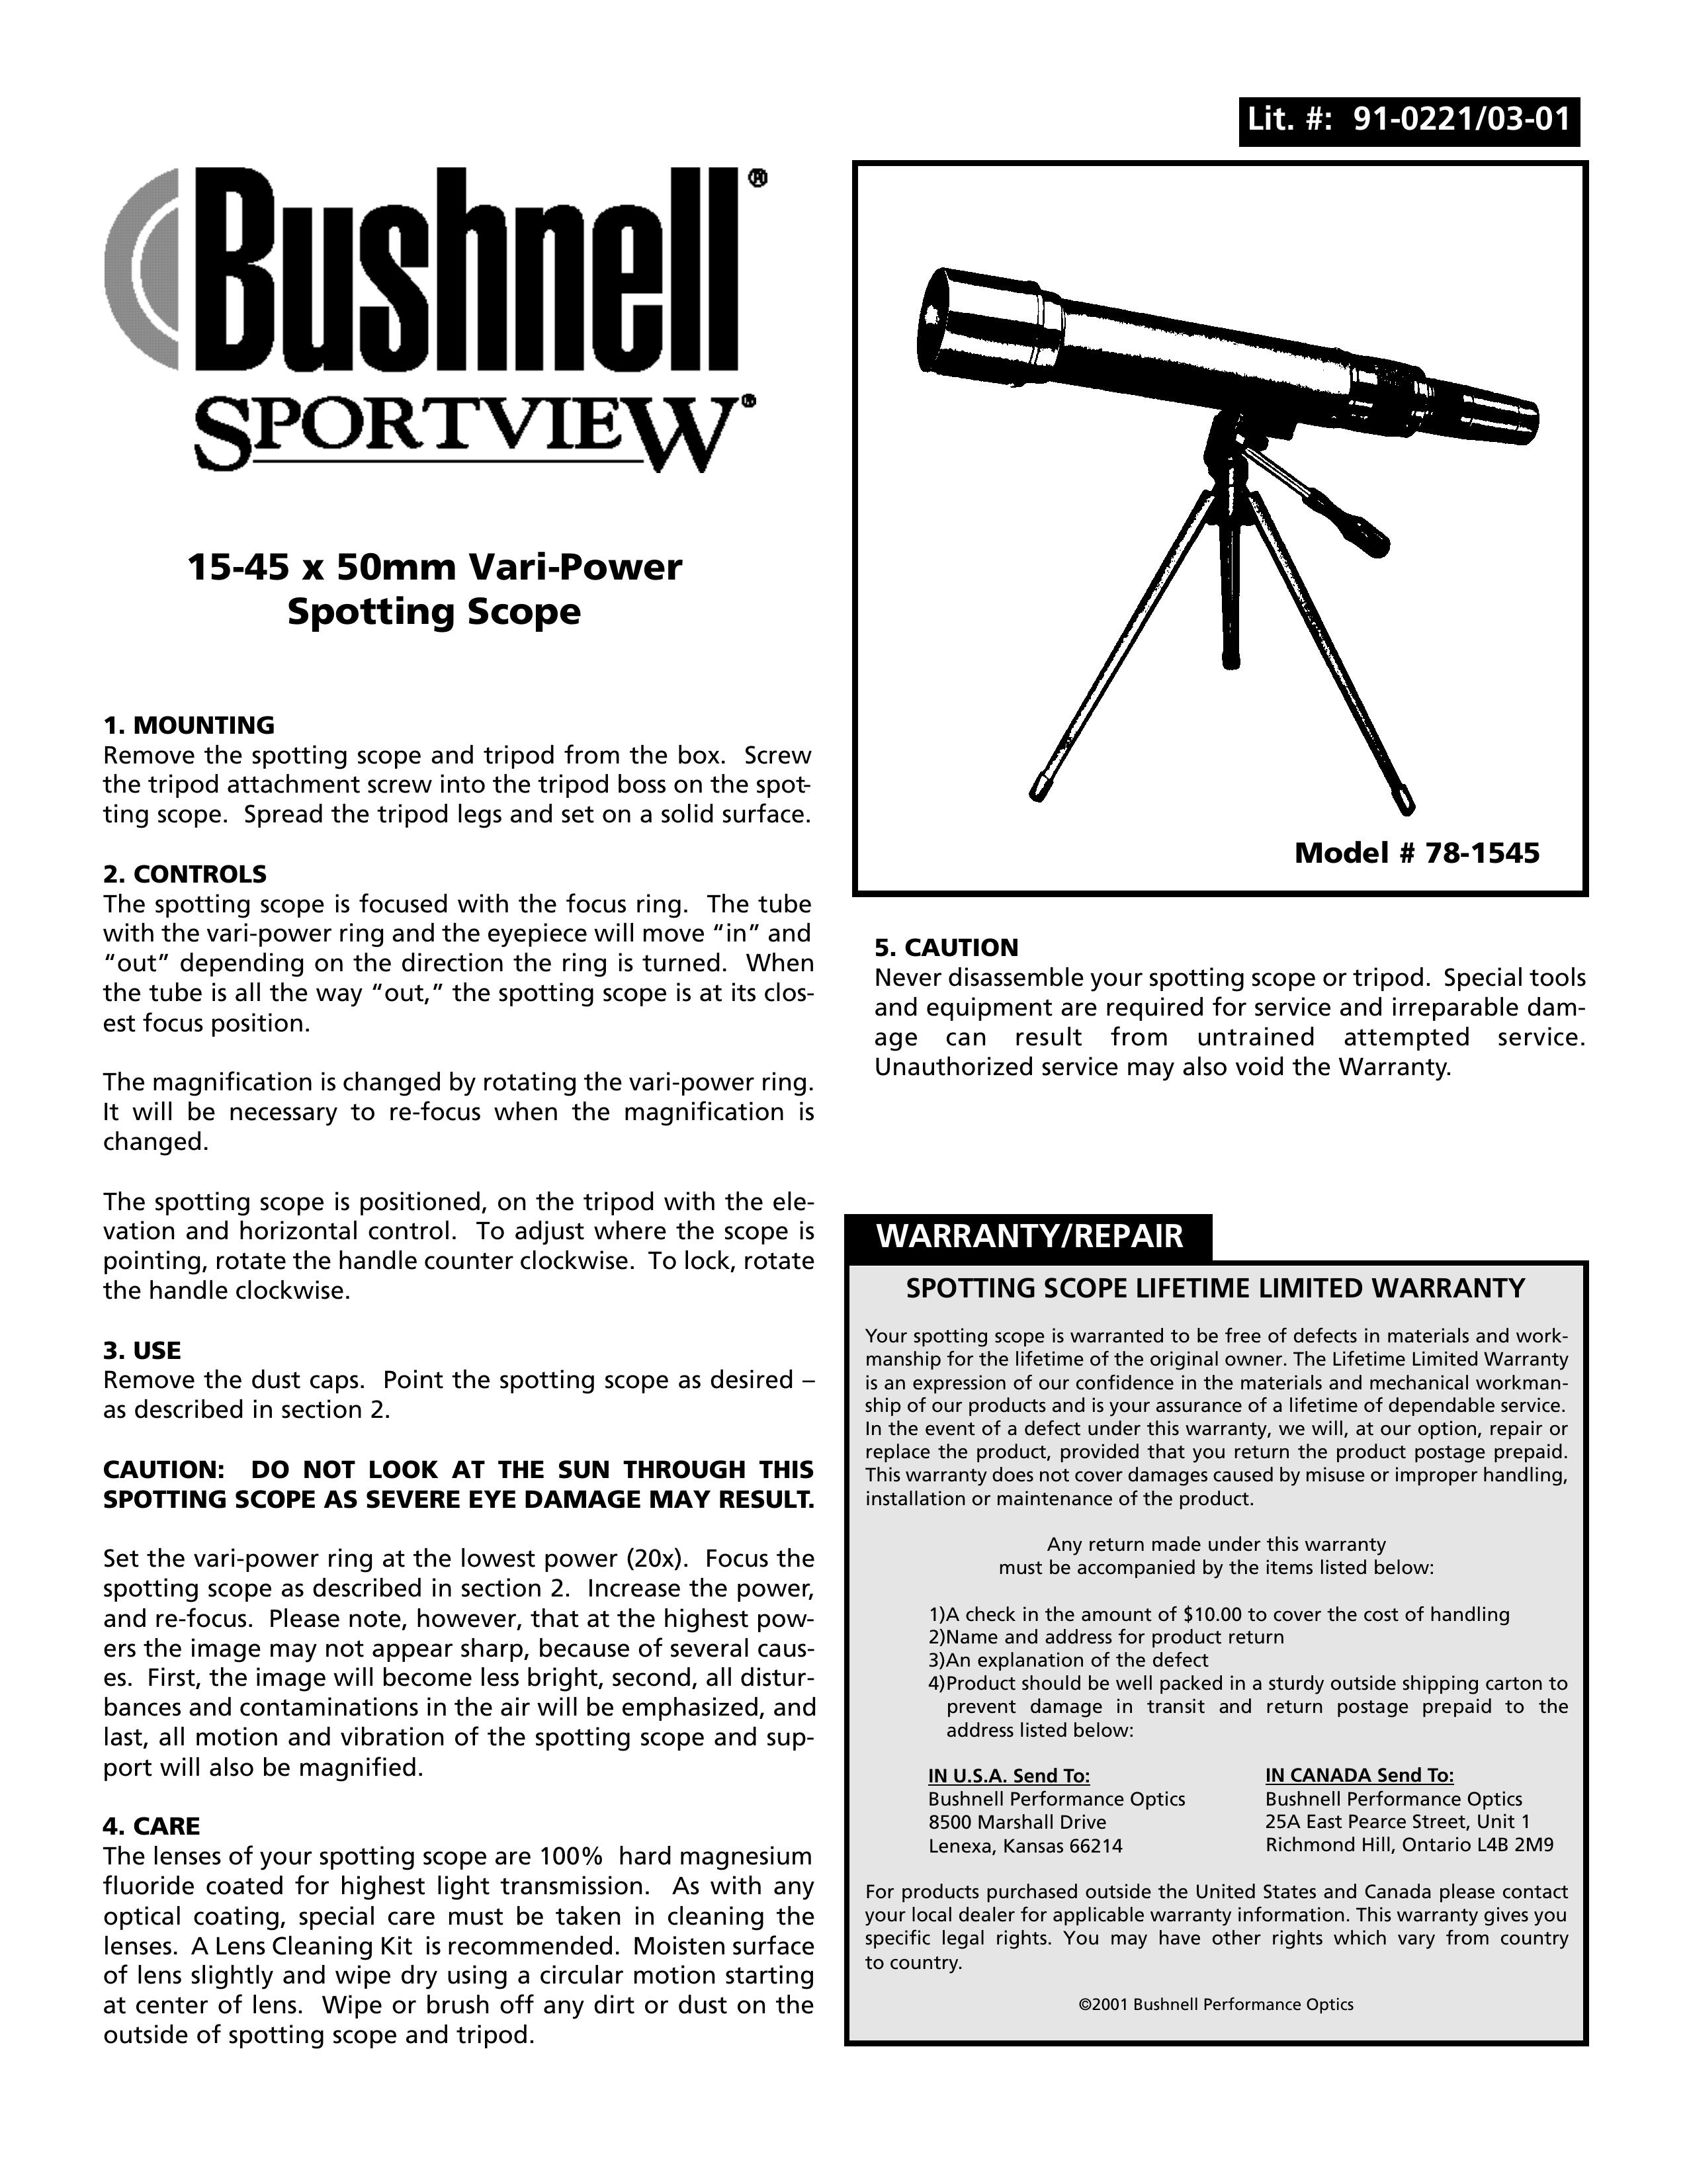 Bushnell 78-1545 Telescope User Manual